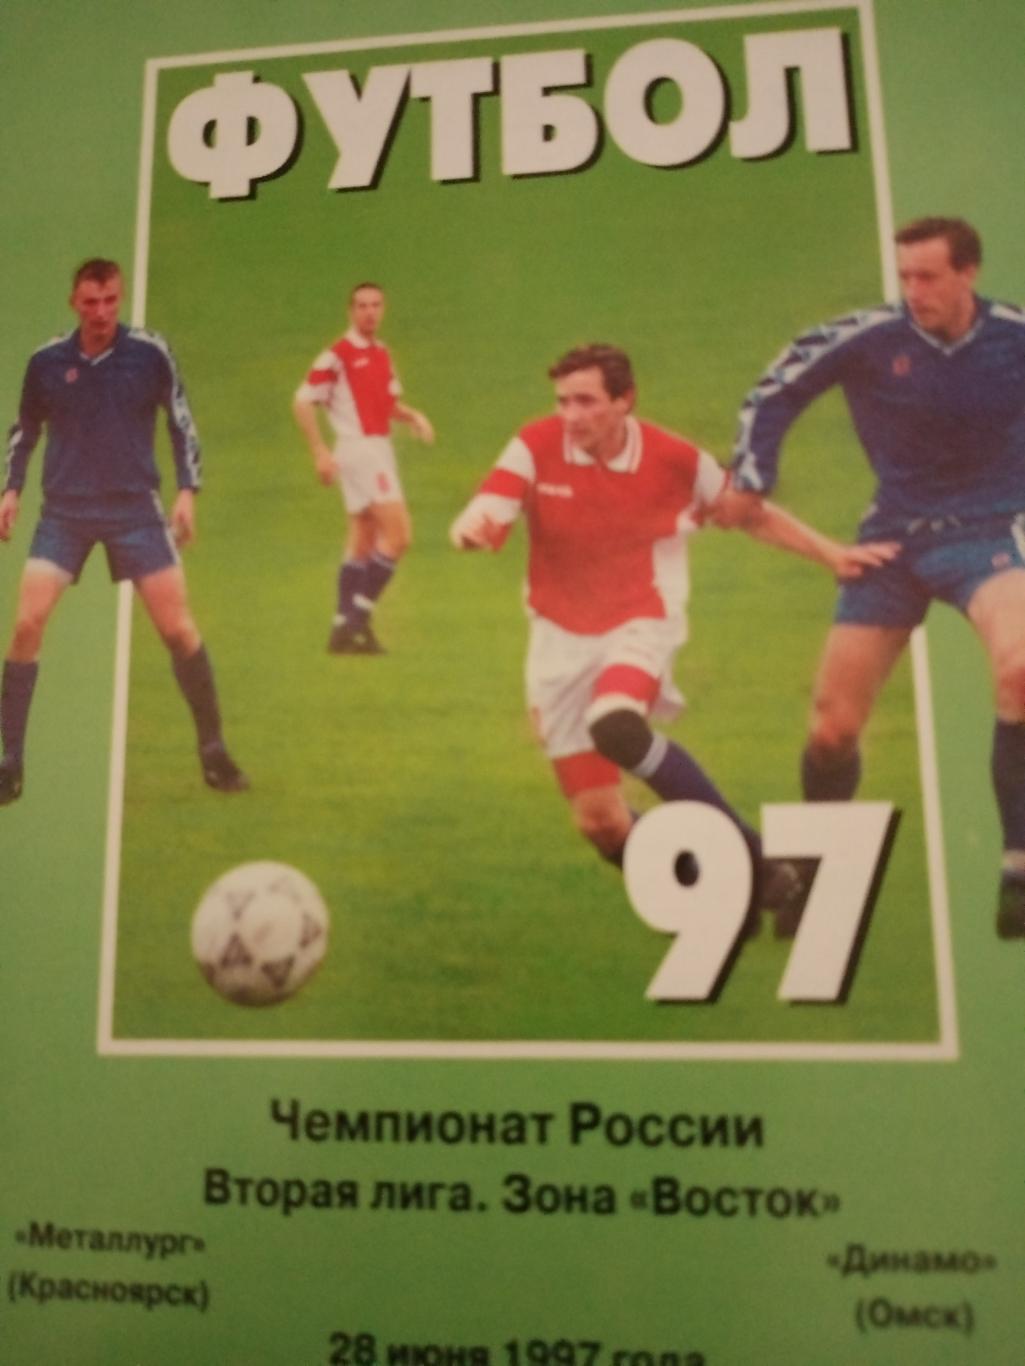 Металлург Красноярск - Динамо Омск. 28 июня 1997 год